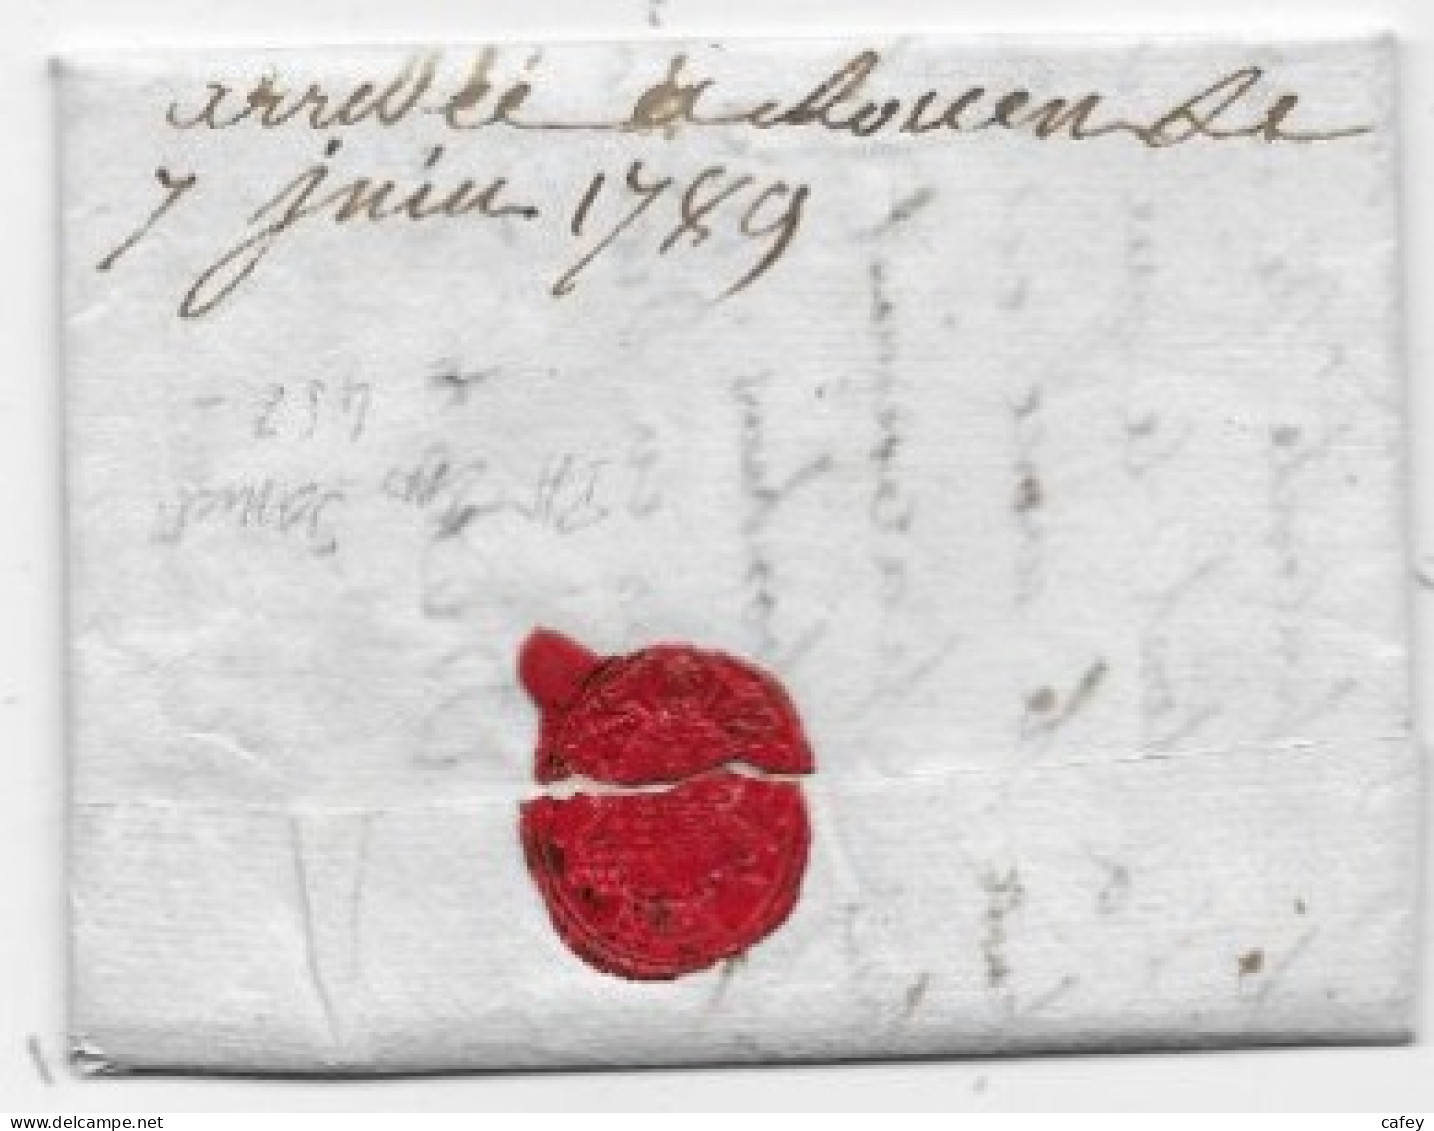 SEINE ET OISE  Lettre Marque  Postale Rouge ST GERMAIN Juin 1789 (seule Date Connue) Rare Indice 19 - 1701-1800: Précurseurs XVIII